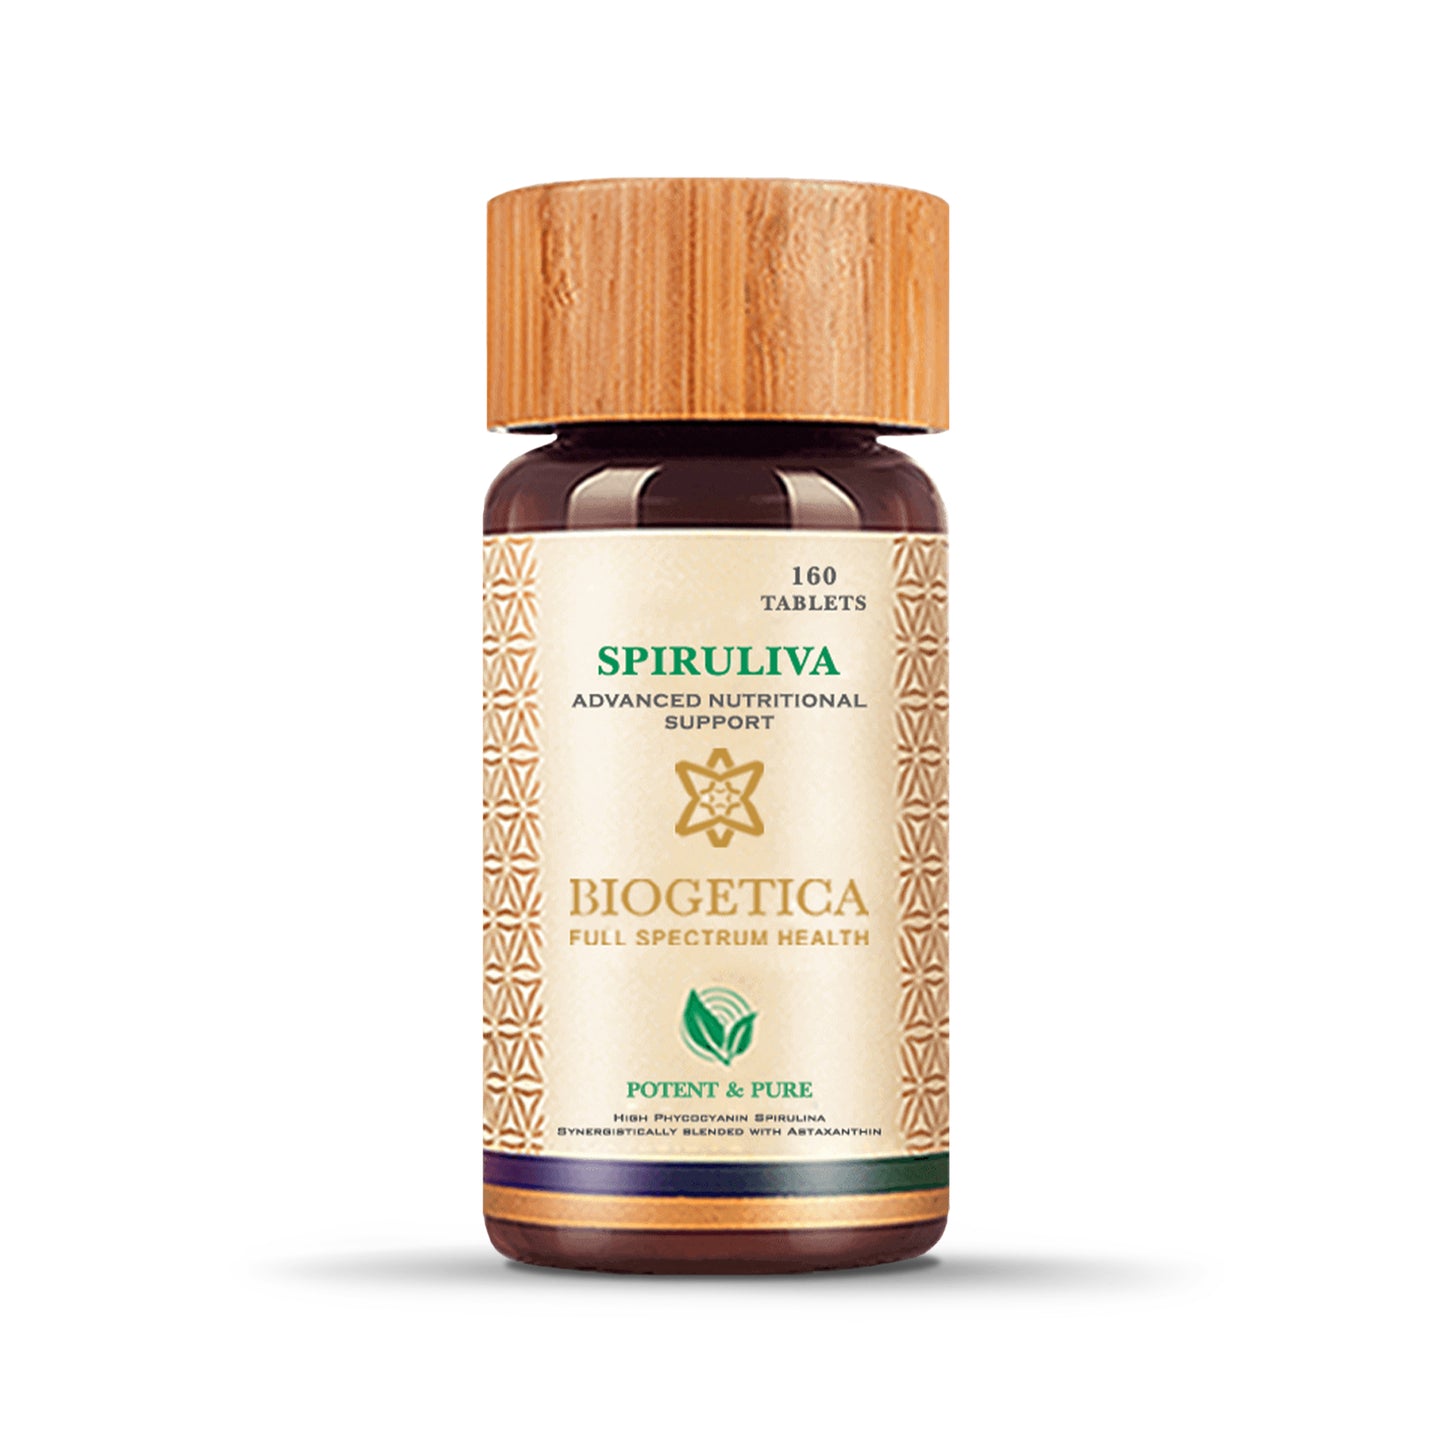 Biogetica SpiruLiva - Advance Nutritional Support, 160 Tablets